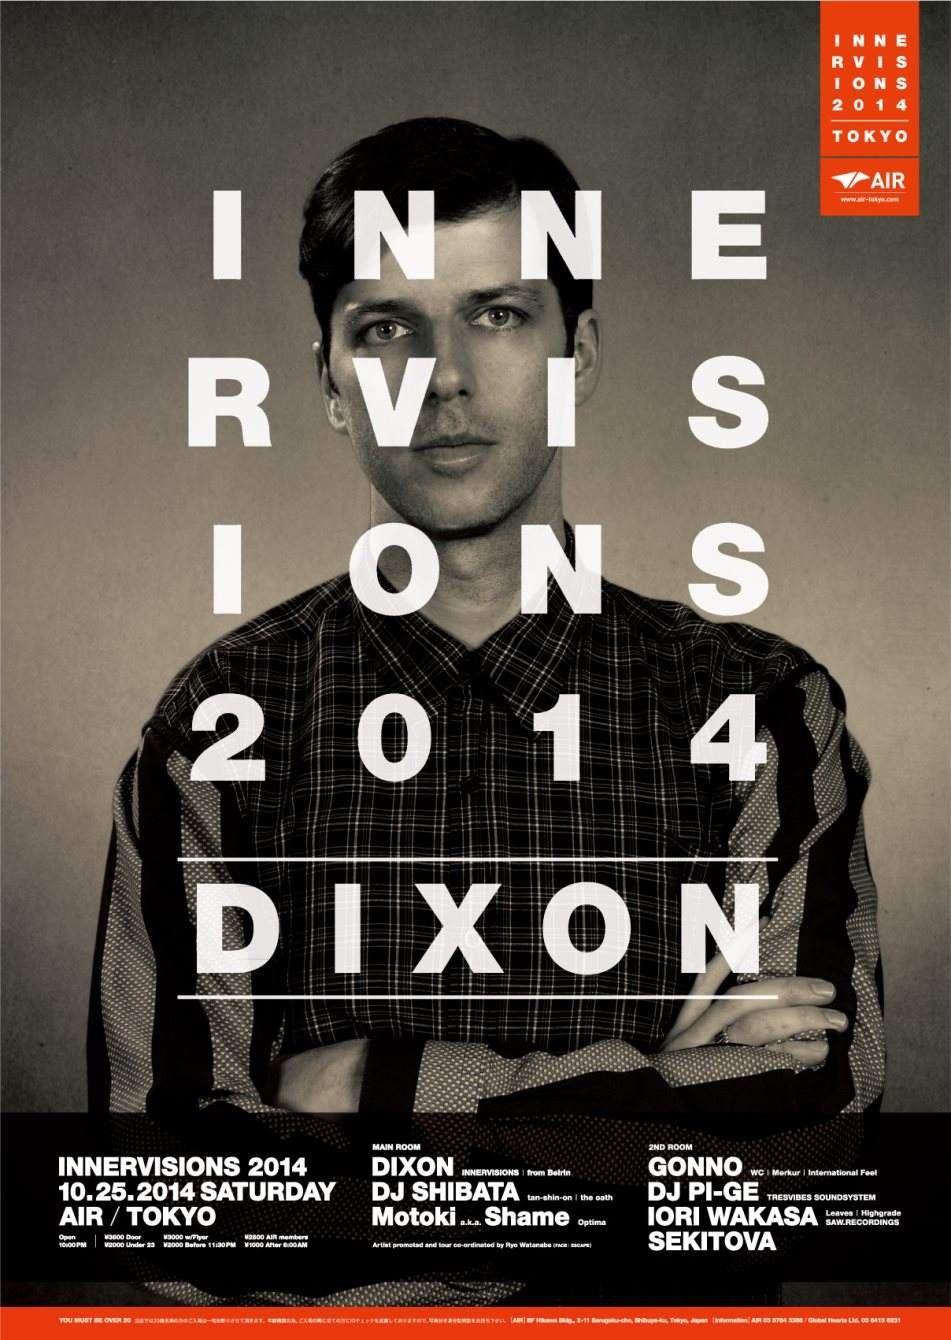 Innervisions 2014 - Página trasera